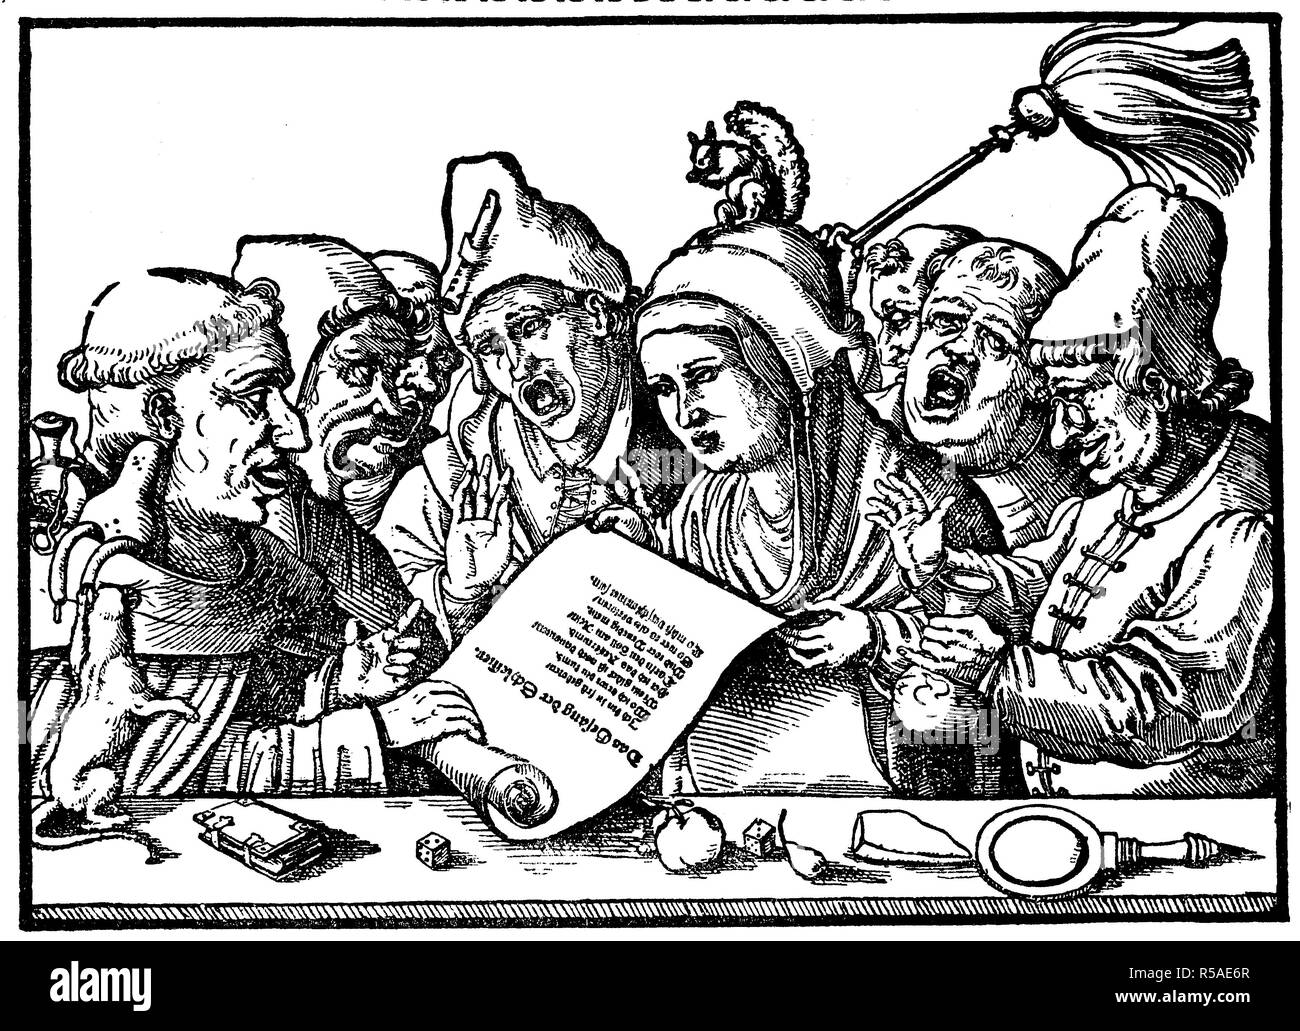 Les clercs de conduite avec un chant sur le festin, 1510, gravure sur bois, Italie Banque D'Images